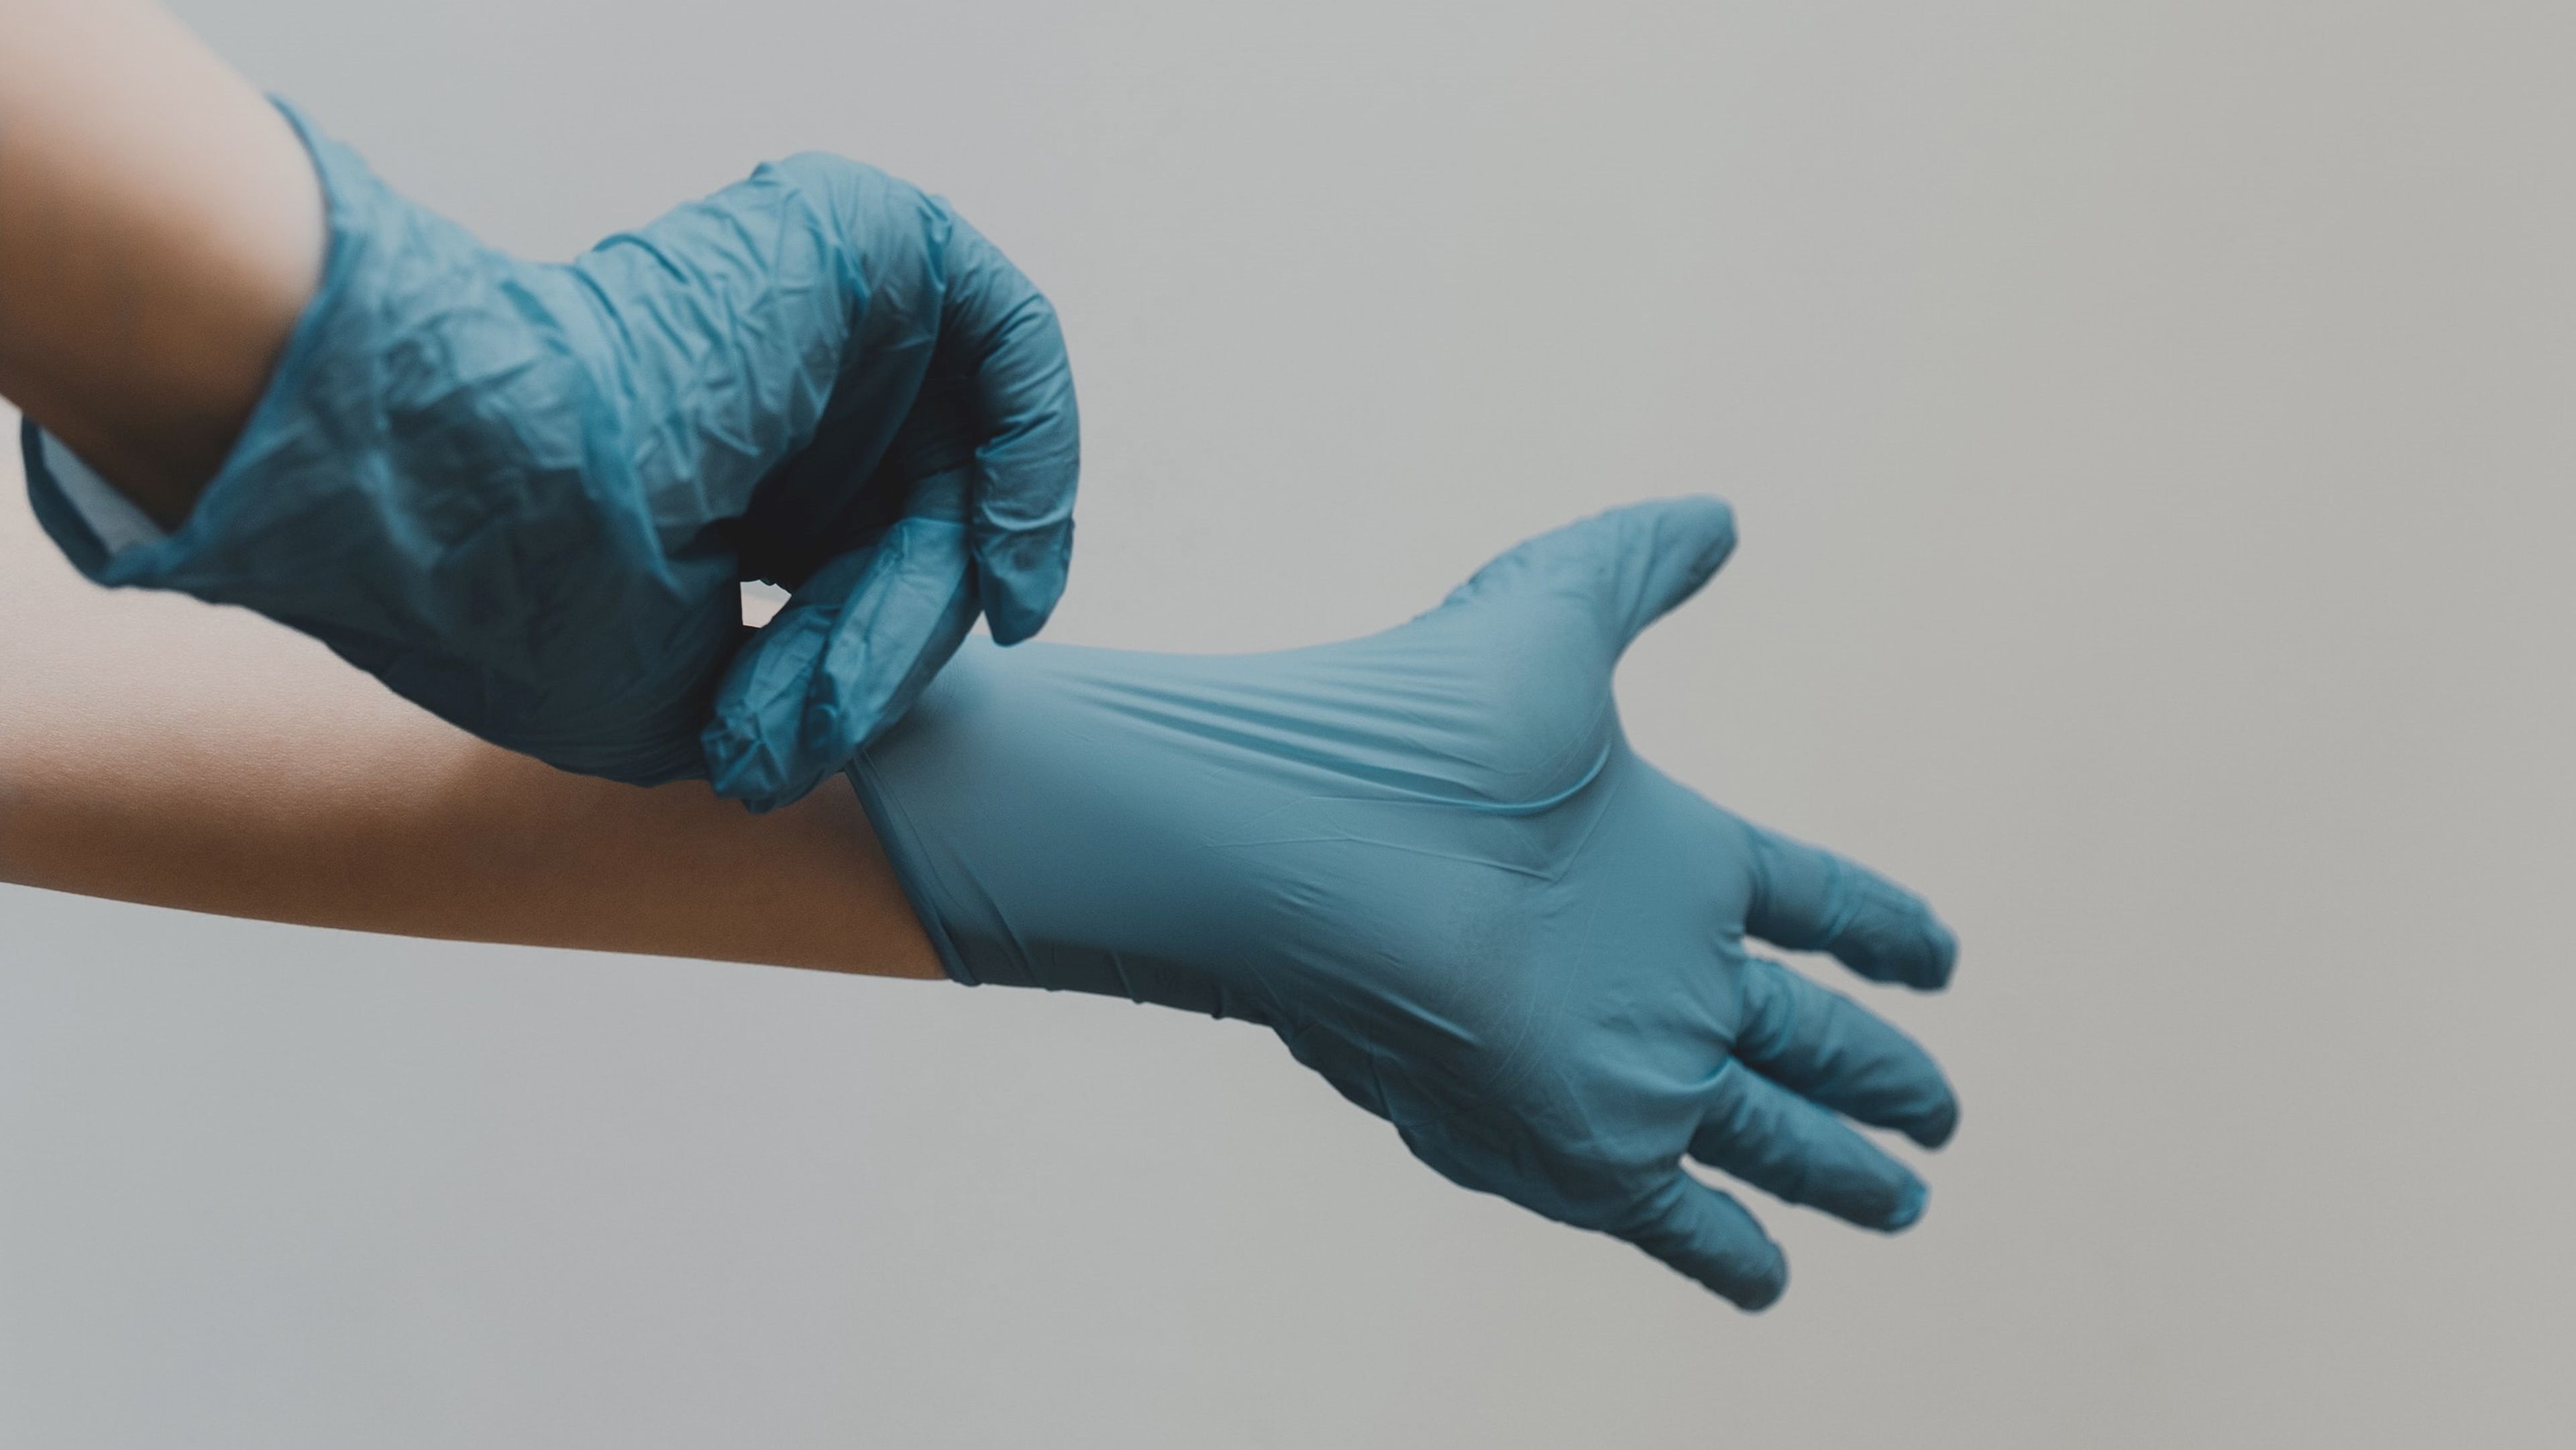 Tocar el exterior de guantes desechables contaminados.